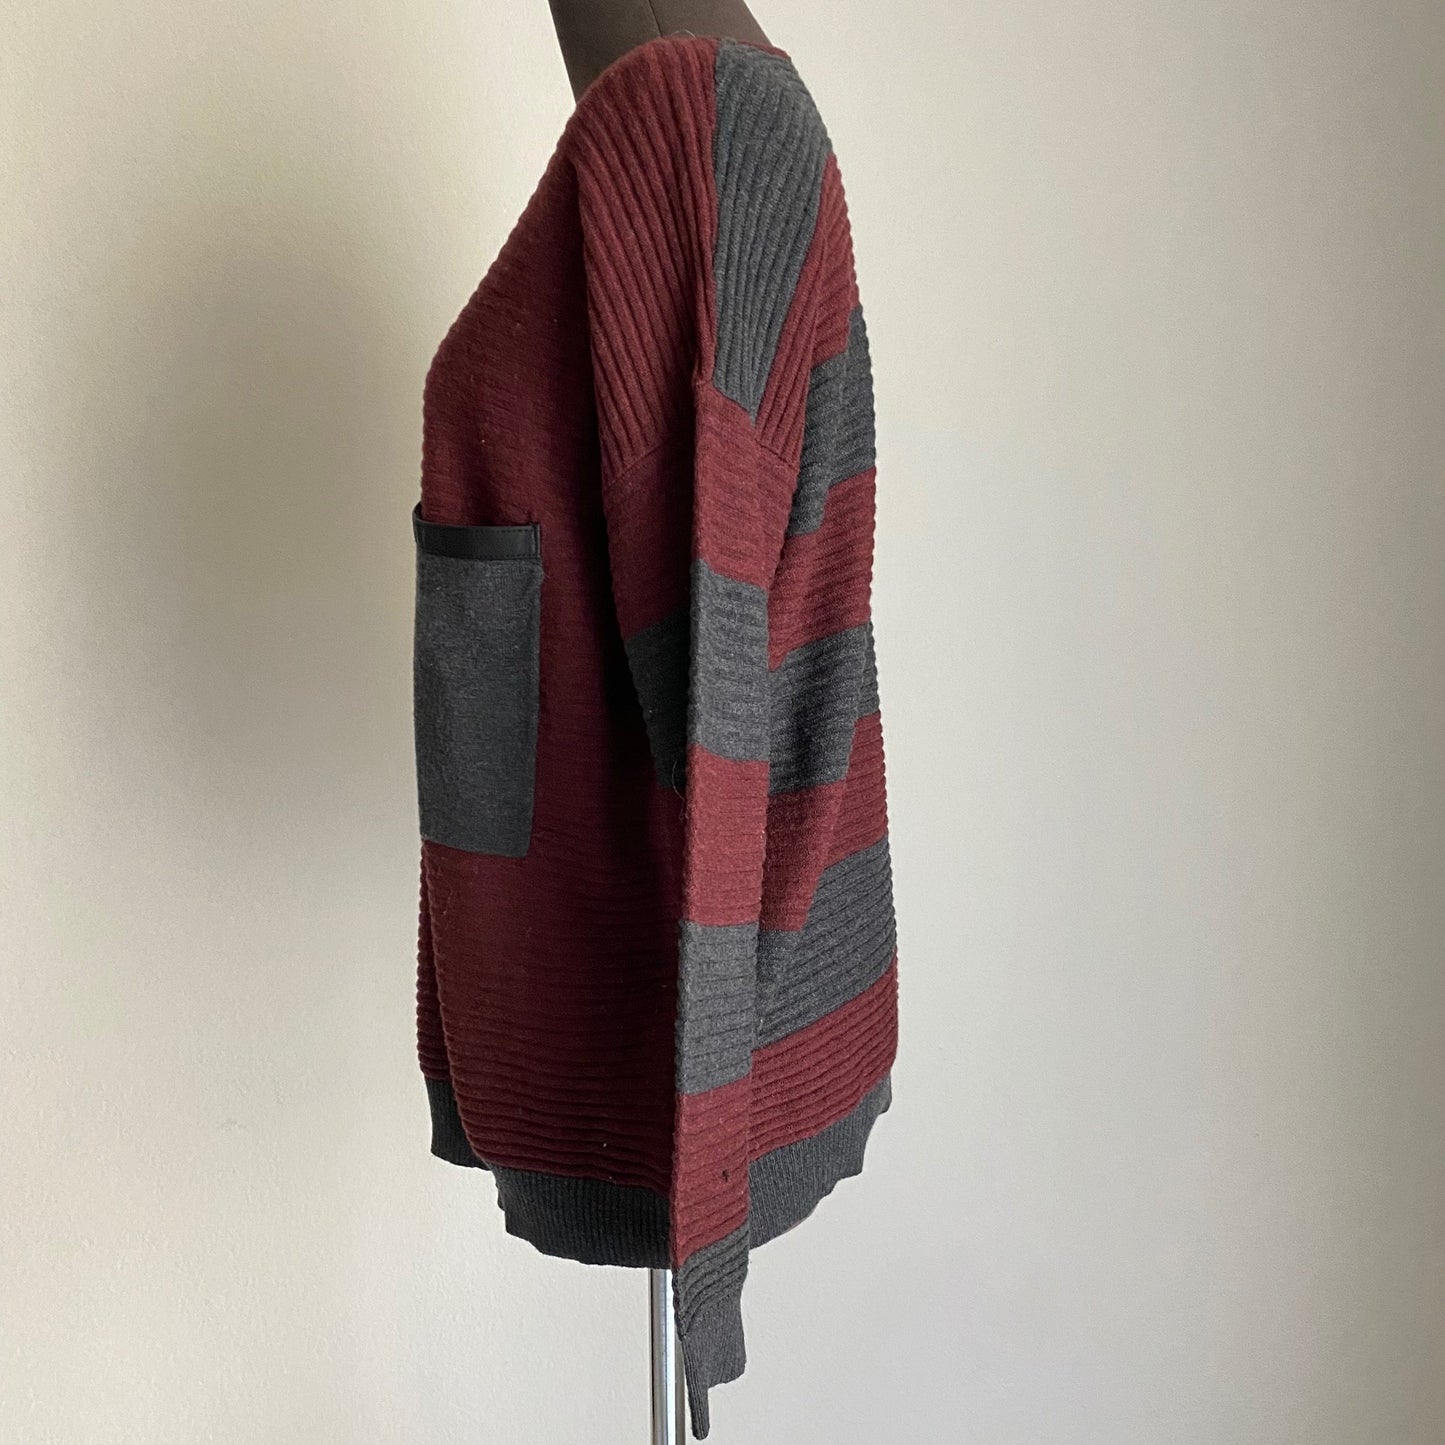 Kerisma sz S/M Maroon/Gray long sleeve scoop neck wool sweater